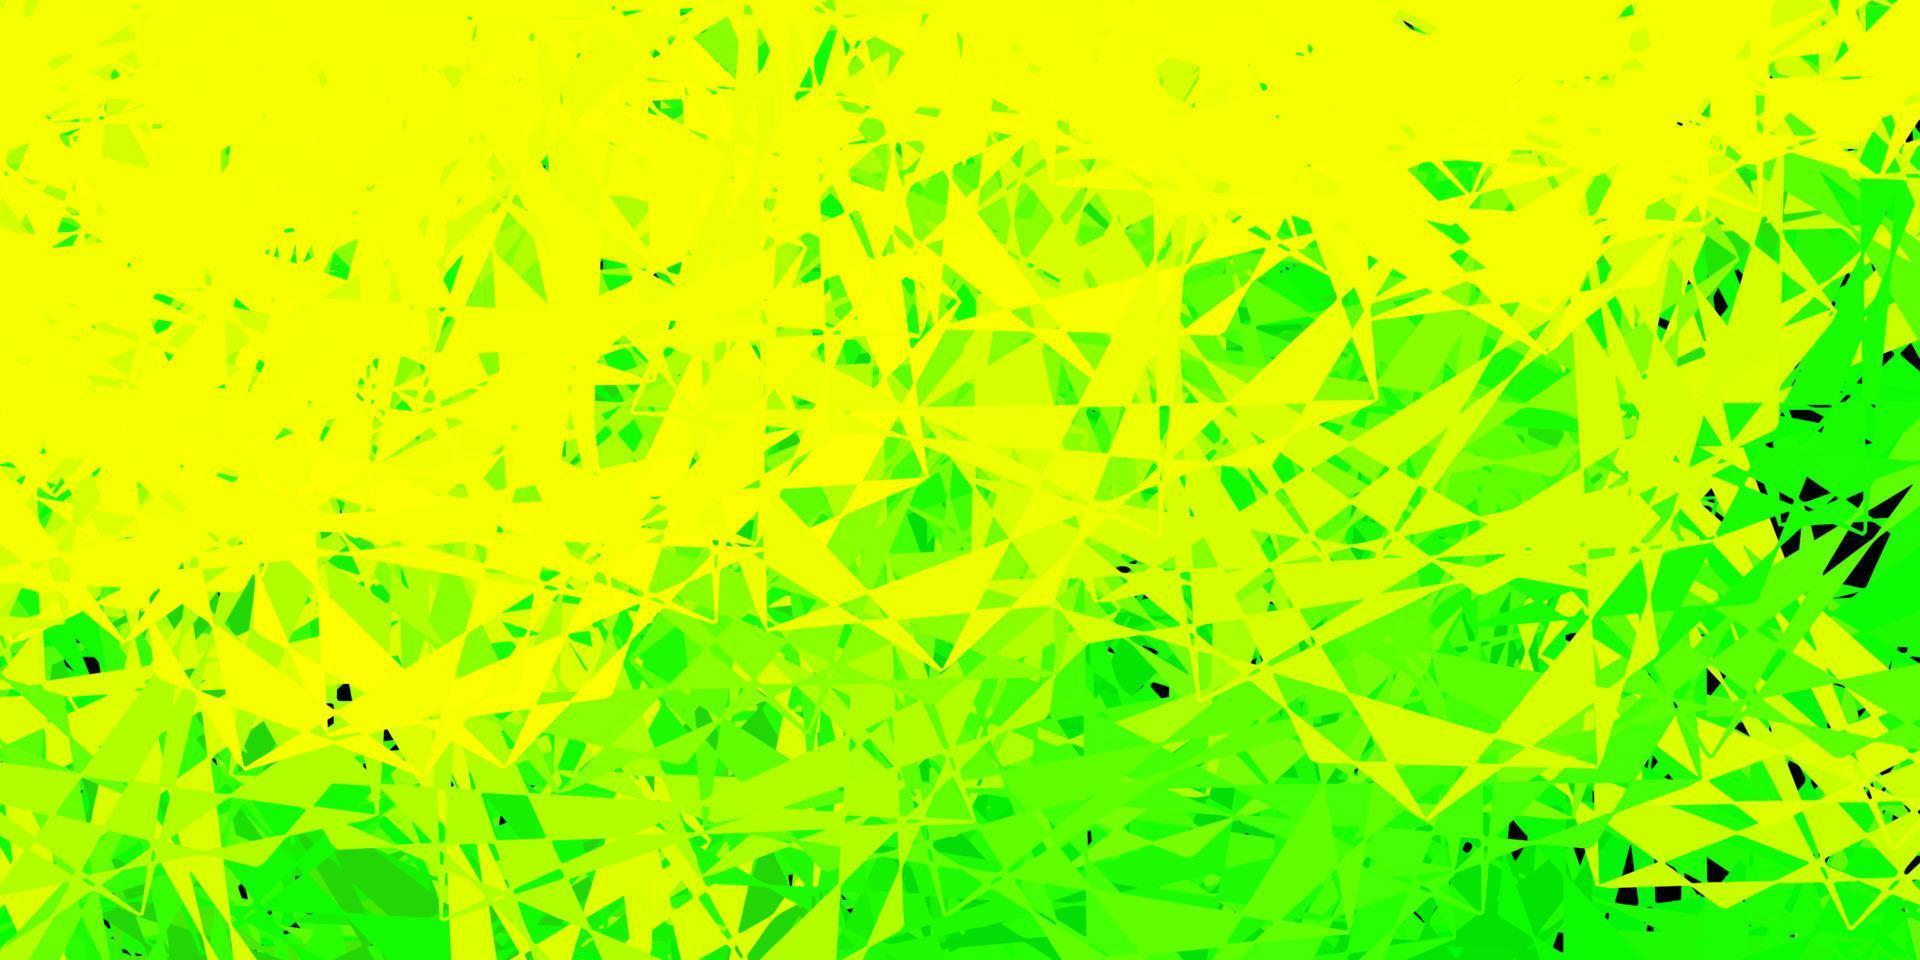 padrão de vetor verde e amarelo claro com formas poligonais.